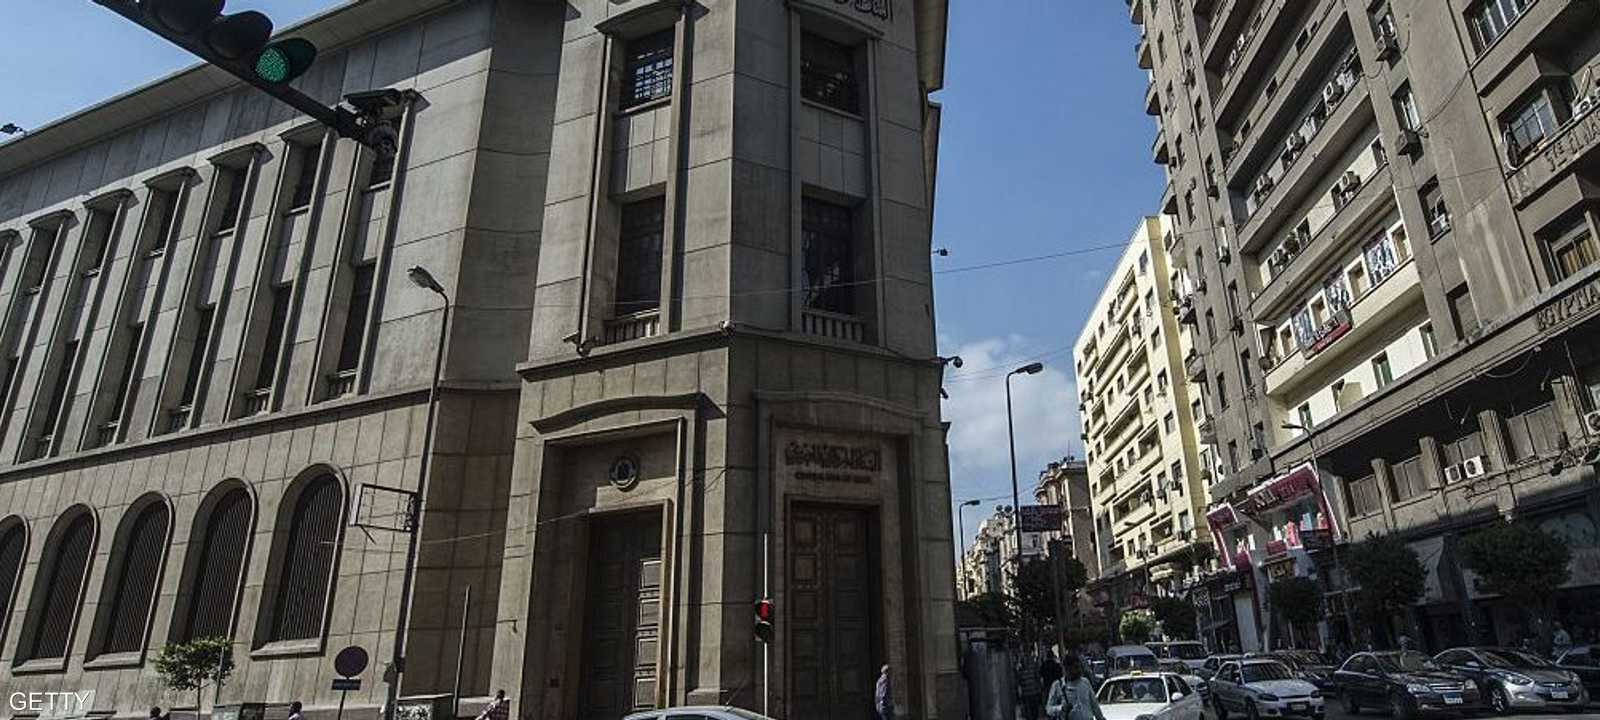 البنك المركزي المصري (أرشيف)